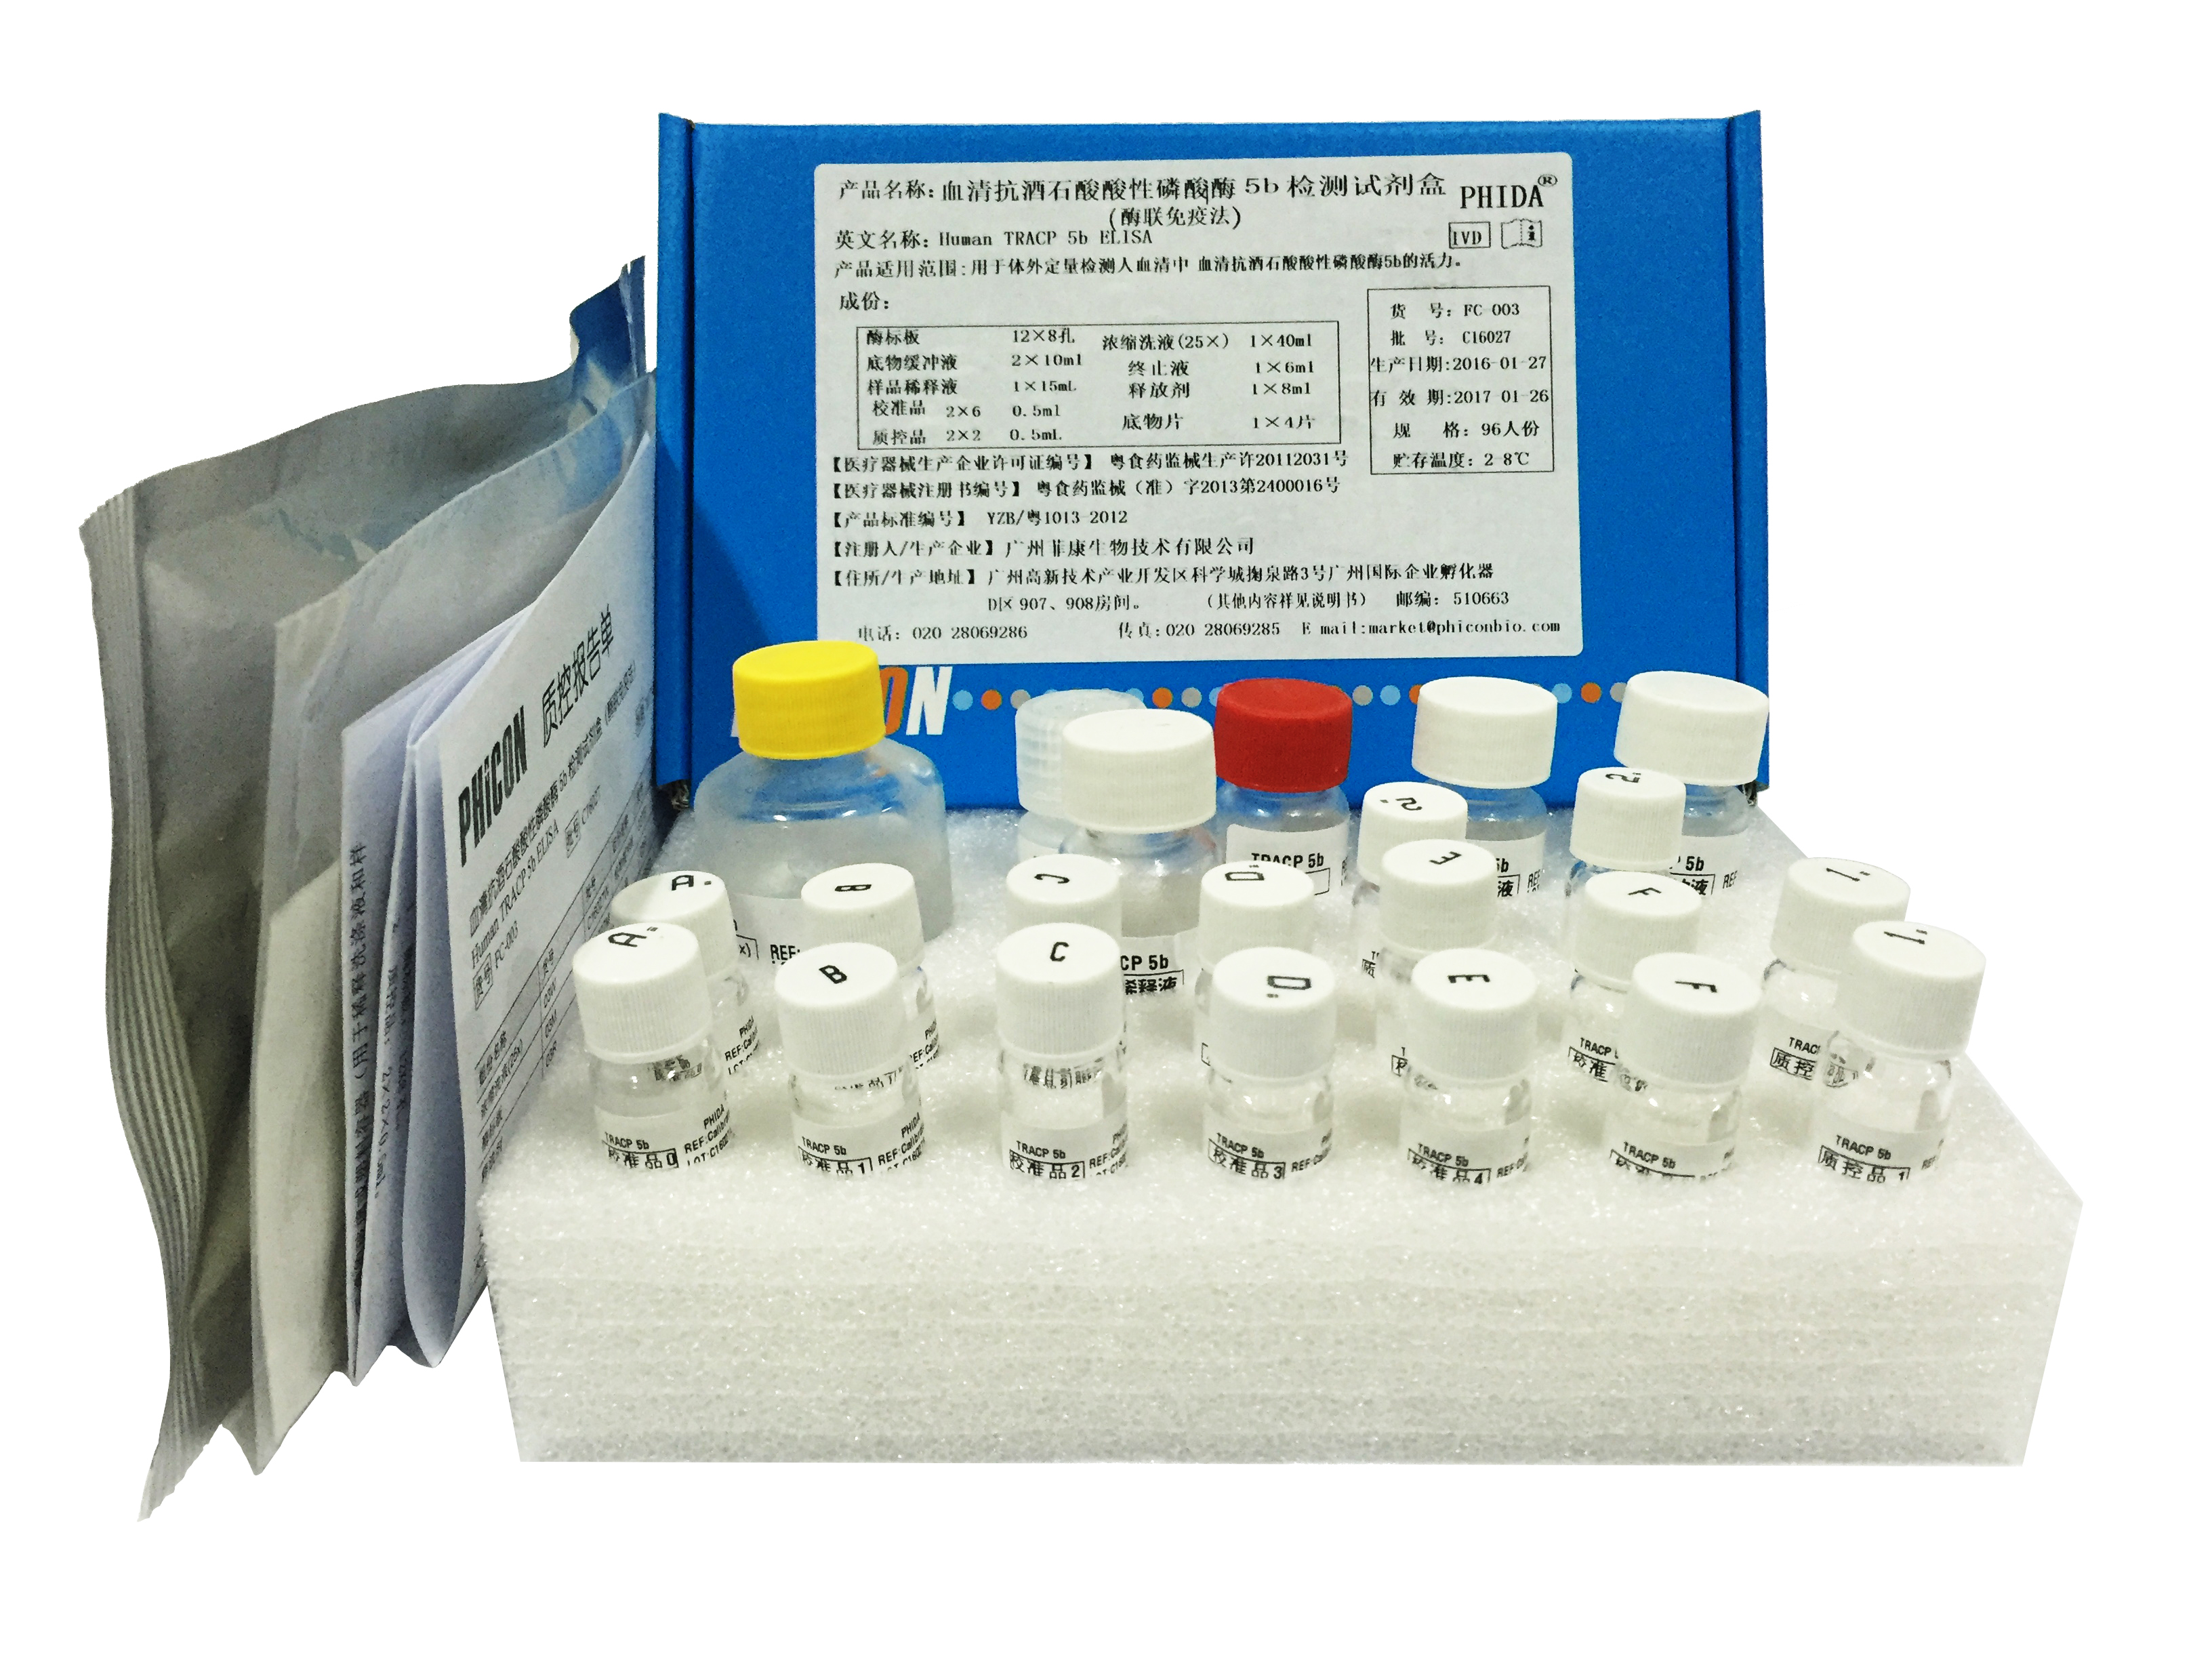  血清抗酒石酸酸性磷酸酶5b检测试剂盒